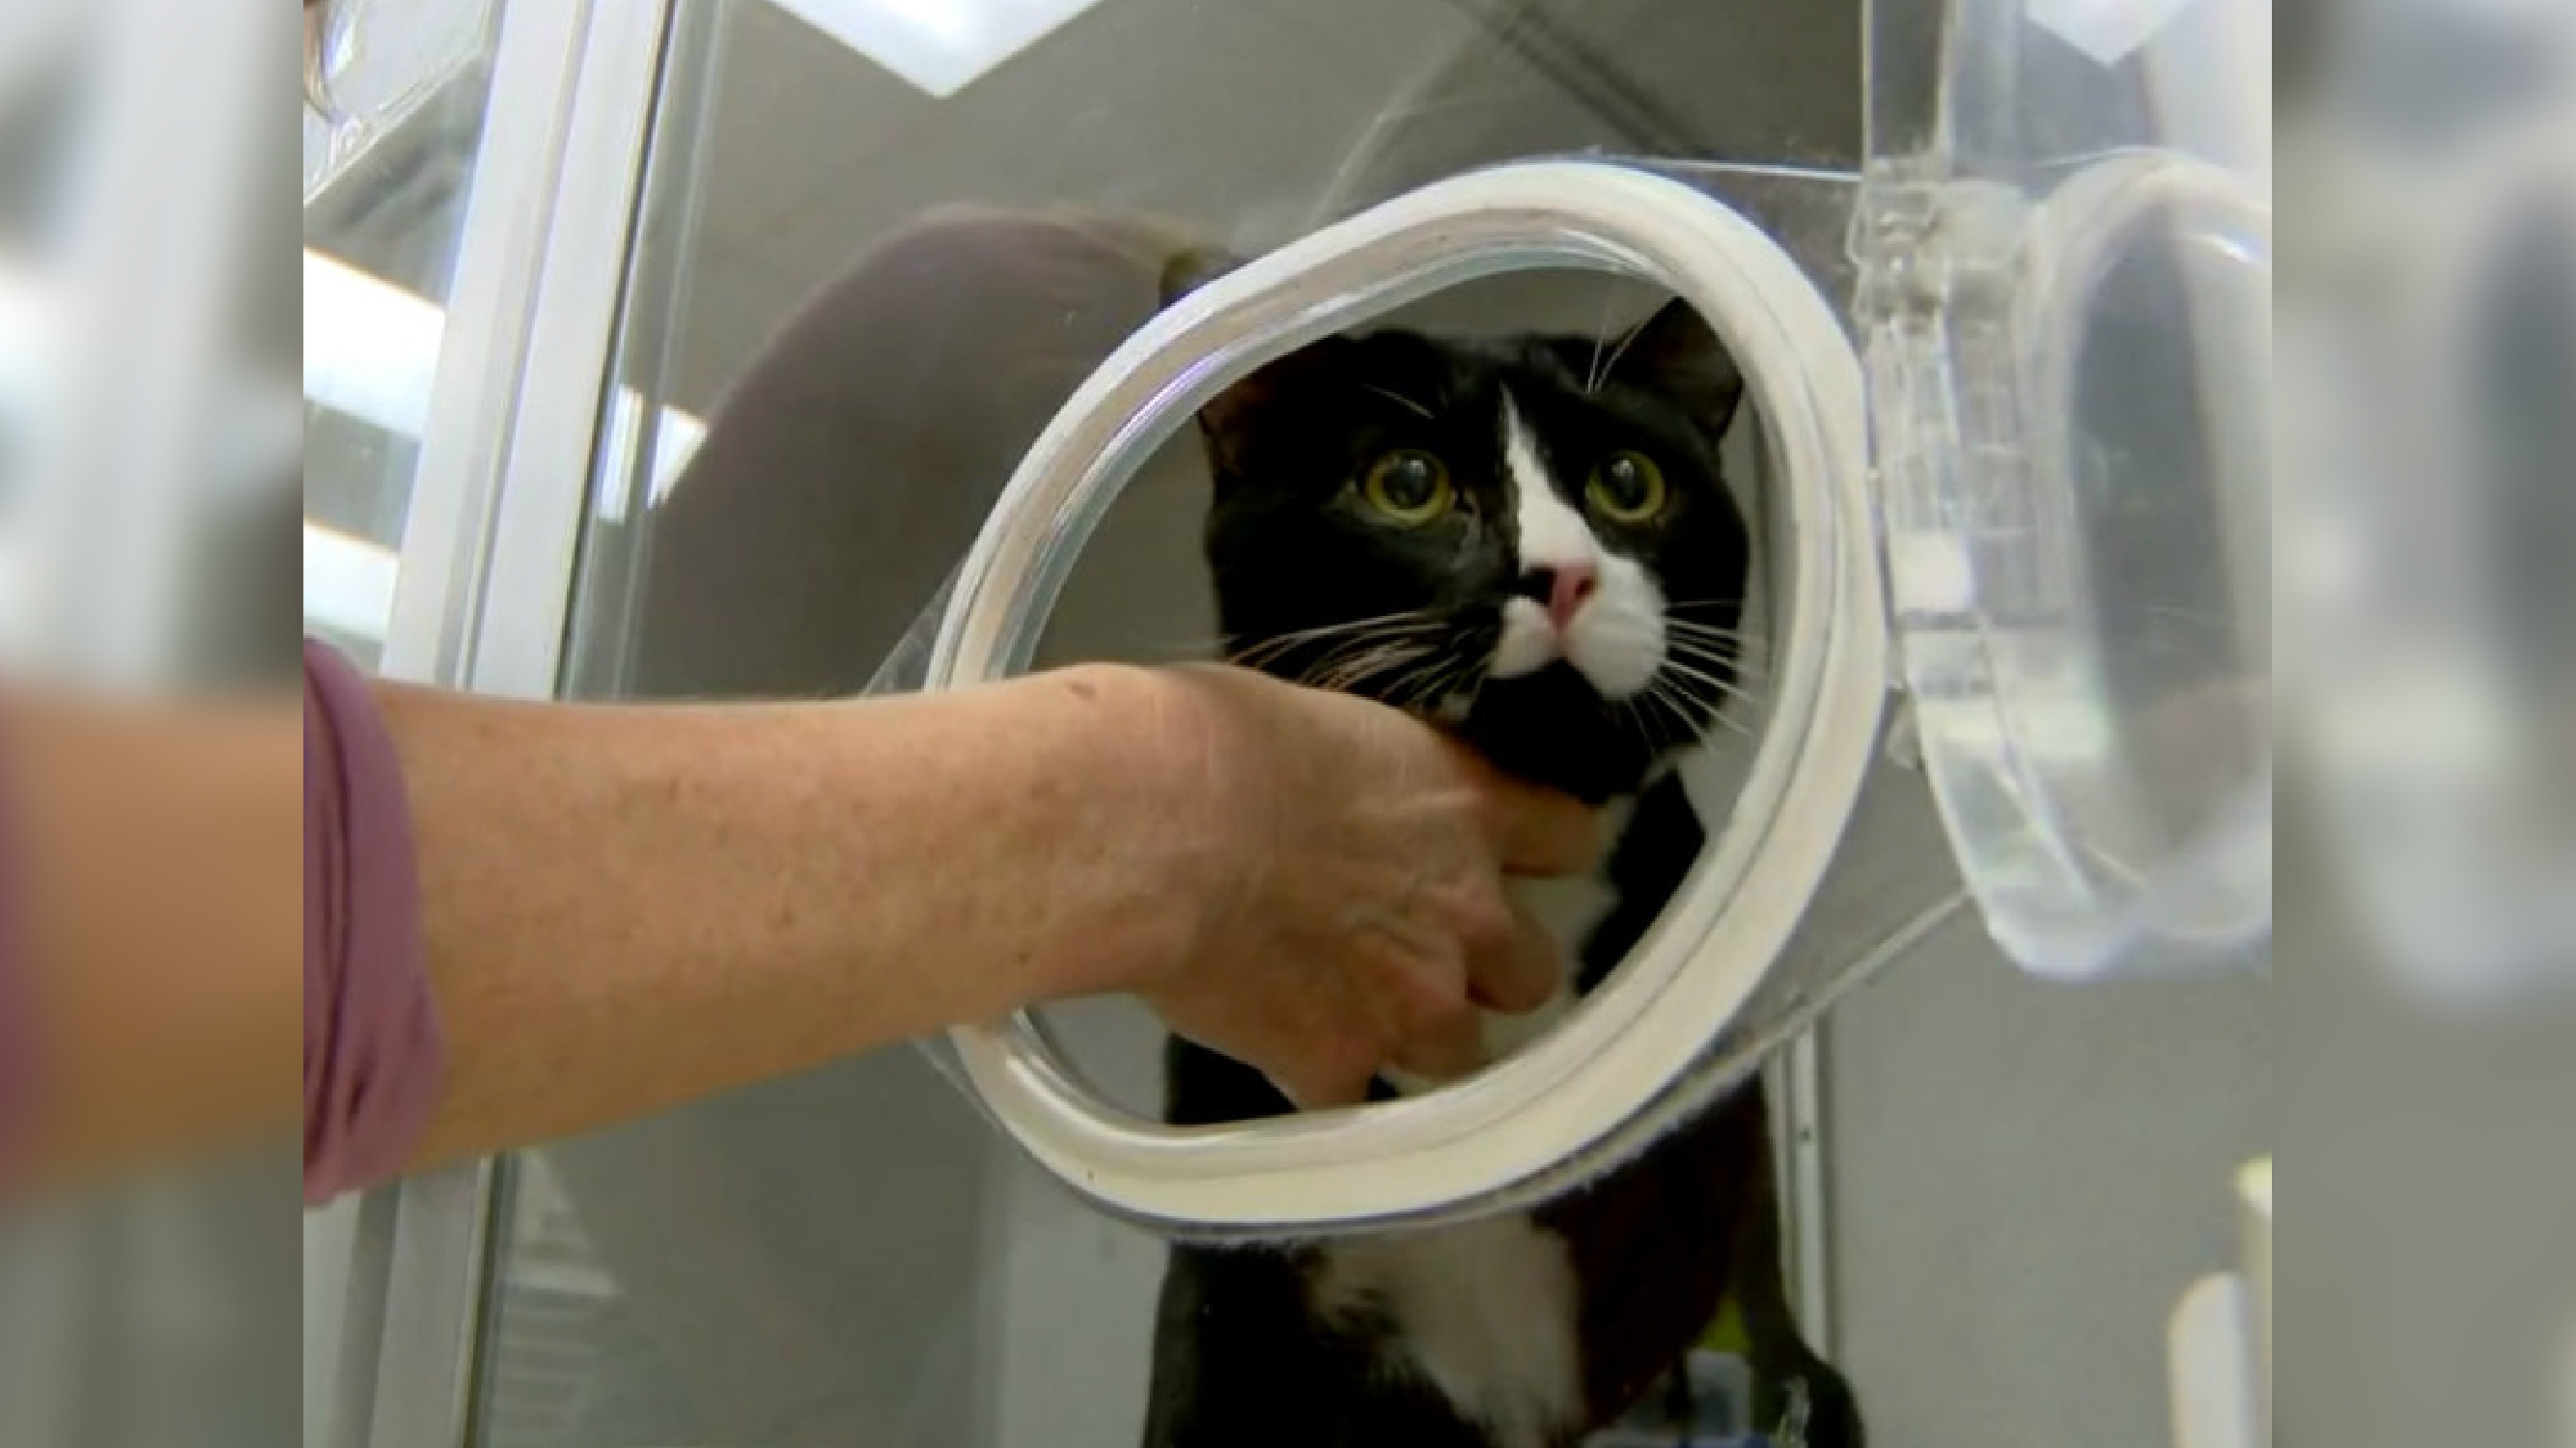 Por descuido, gato fica preso durante uma hora em máquina de lavar ligada/ Imagem: reprodução internet